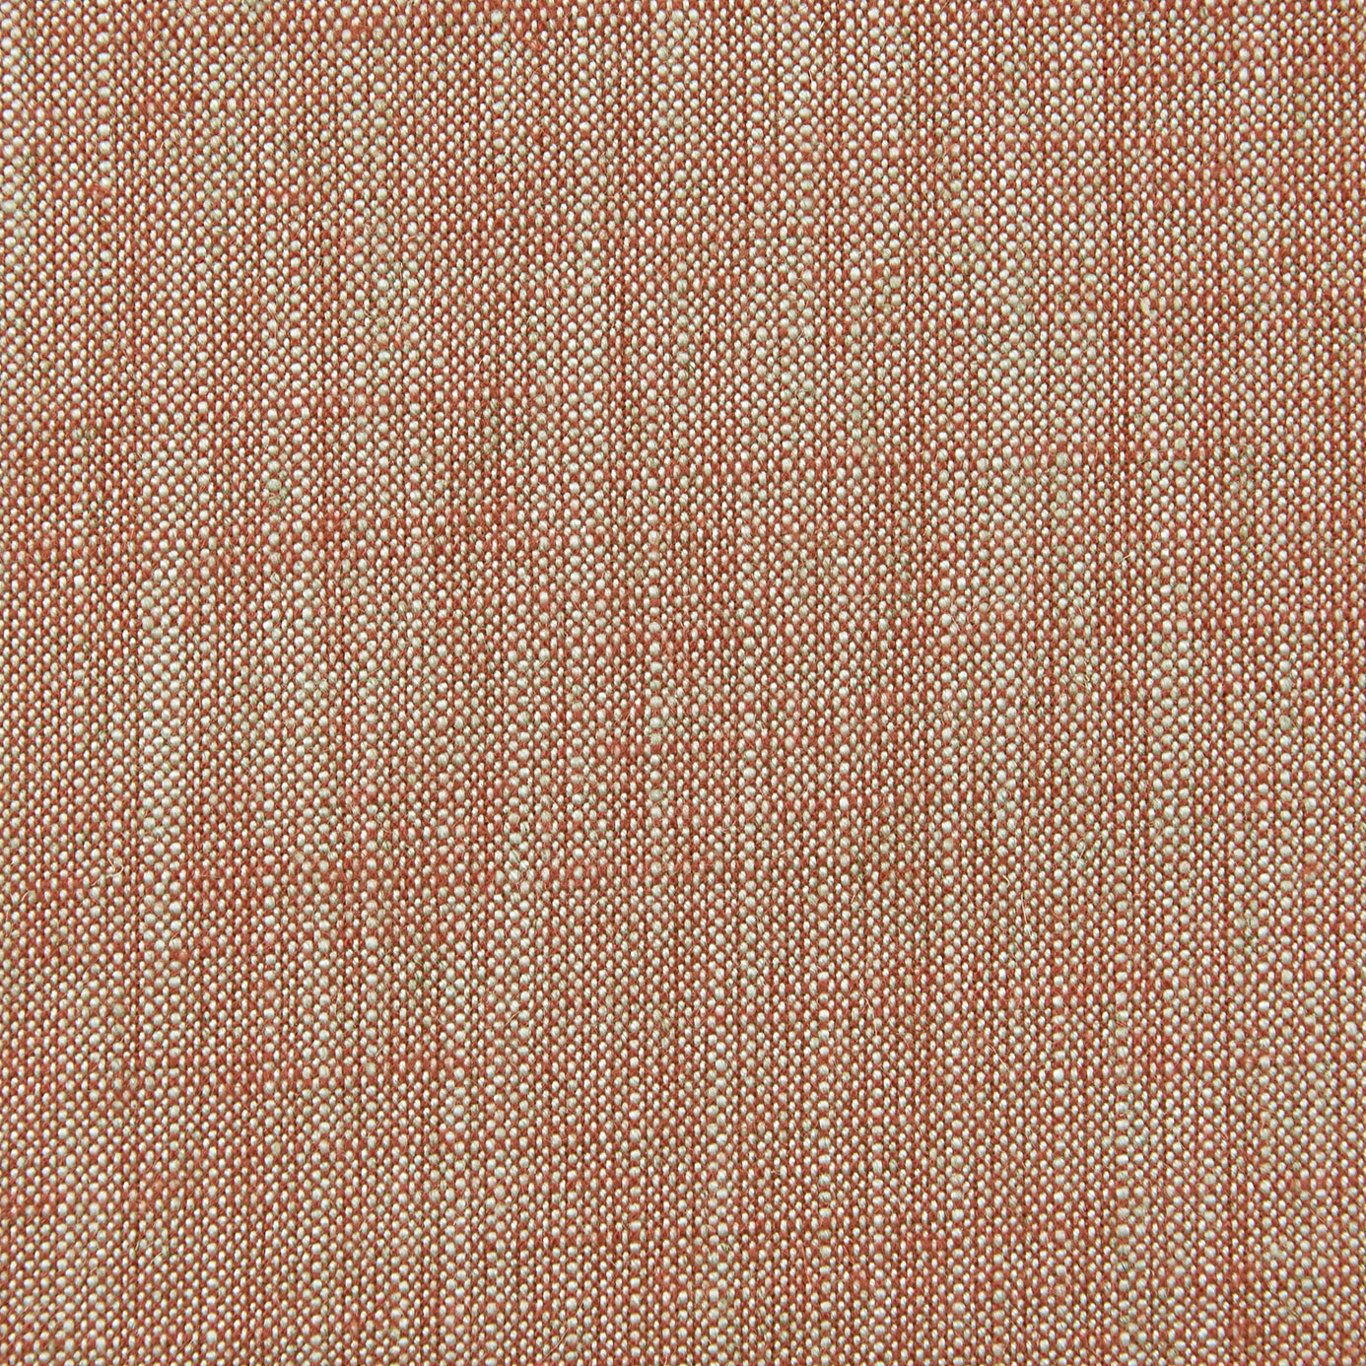 Biarritz Fabric by Clarke & Clarke - F0965/35 - Paprika